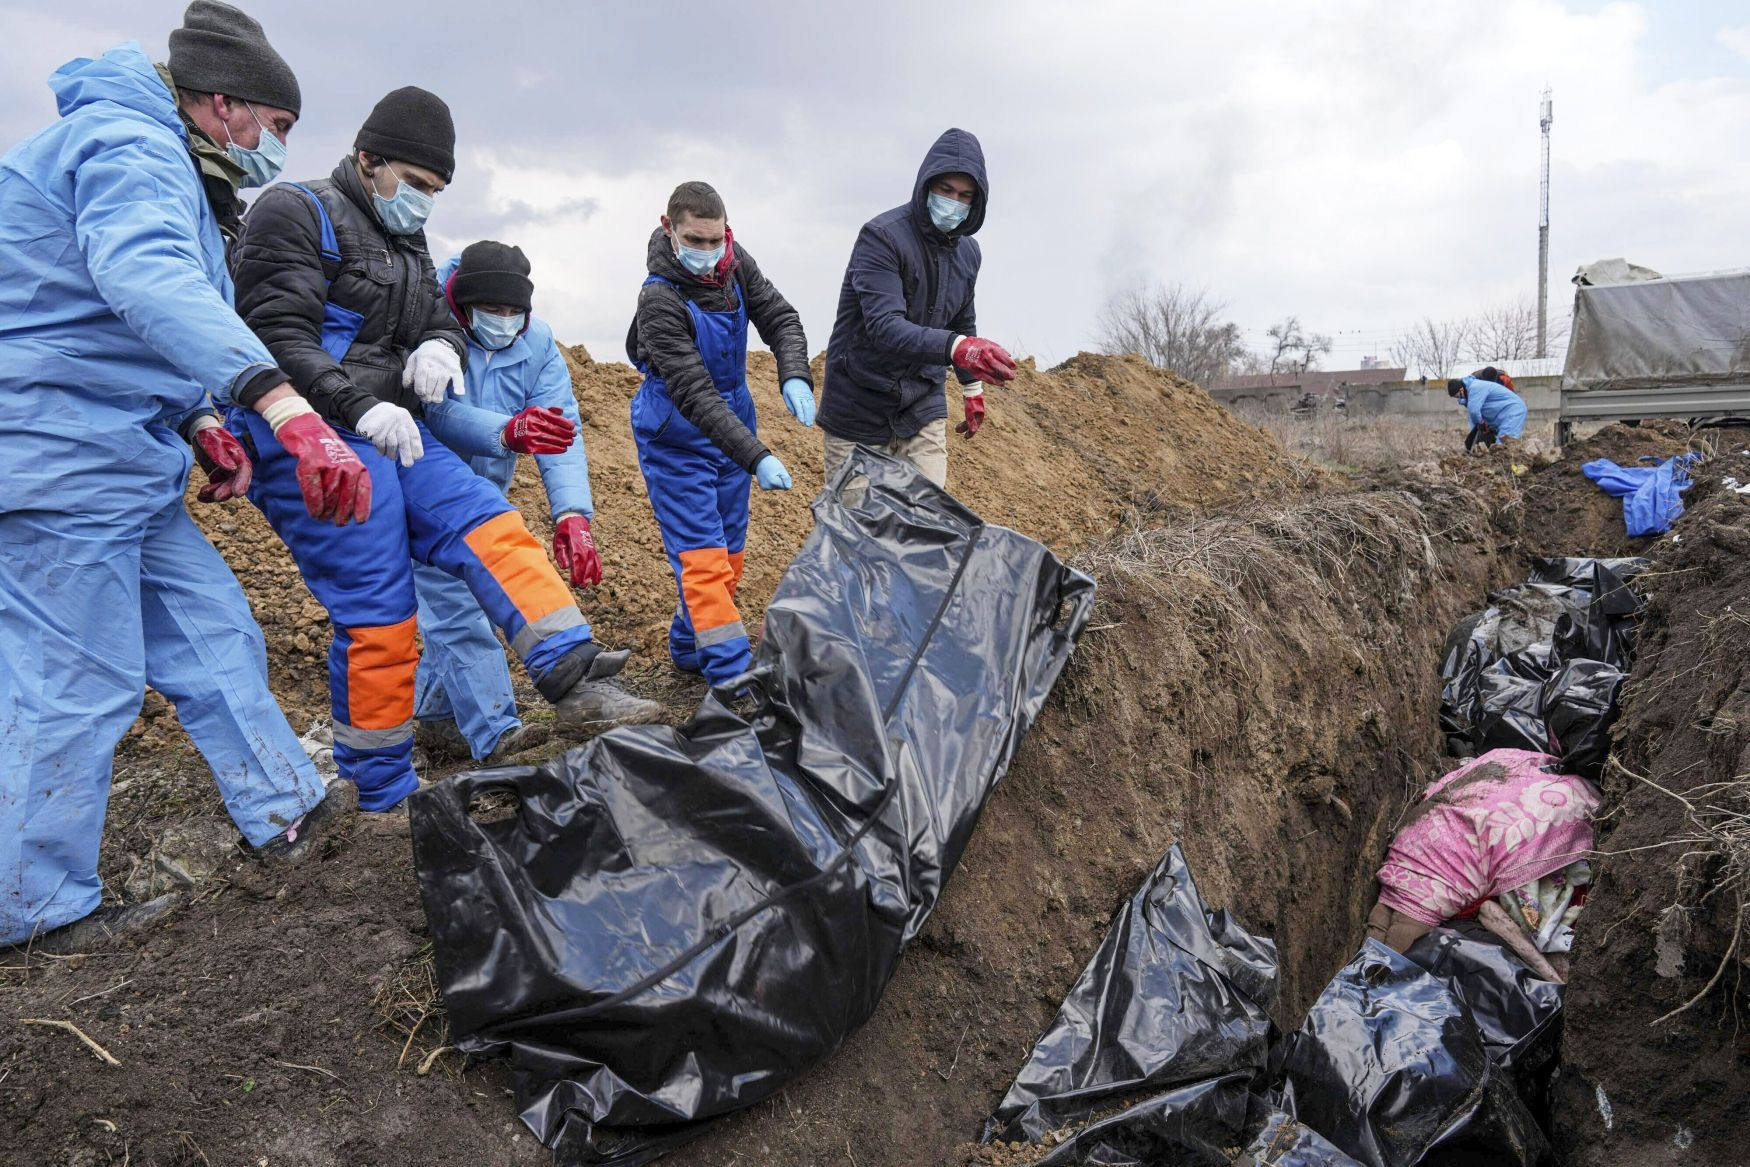 Foto / 9. 3. 2022 / Mariupol / Mrtvoly, mrtvá těla, masový hrob, pohřbívání, invaze / Bombardování, trosky, zkáza, škody, ostřelování, dům, civilisté, obklíčení